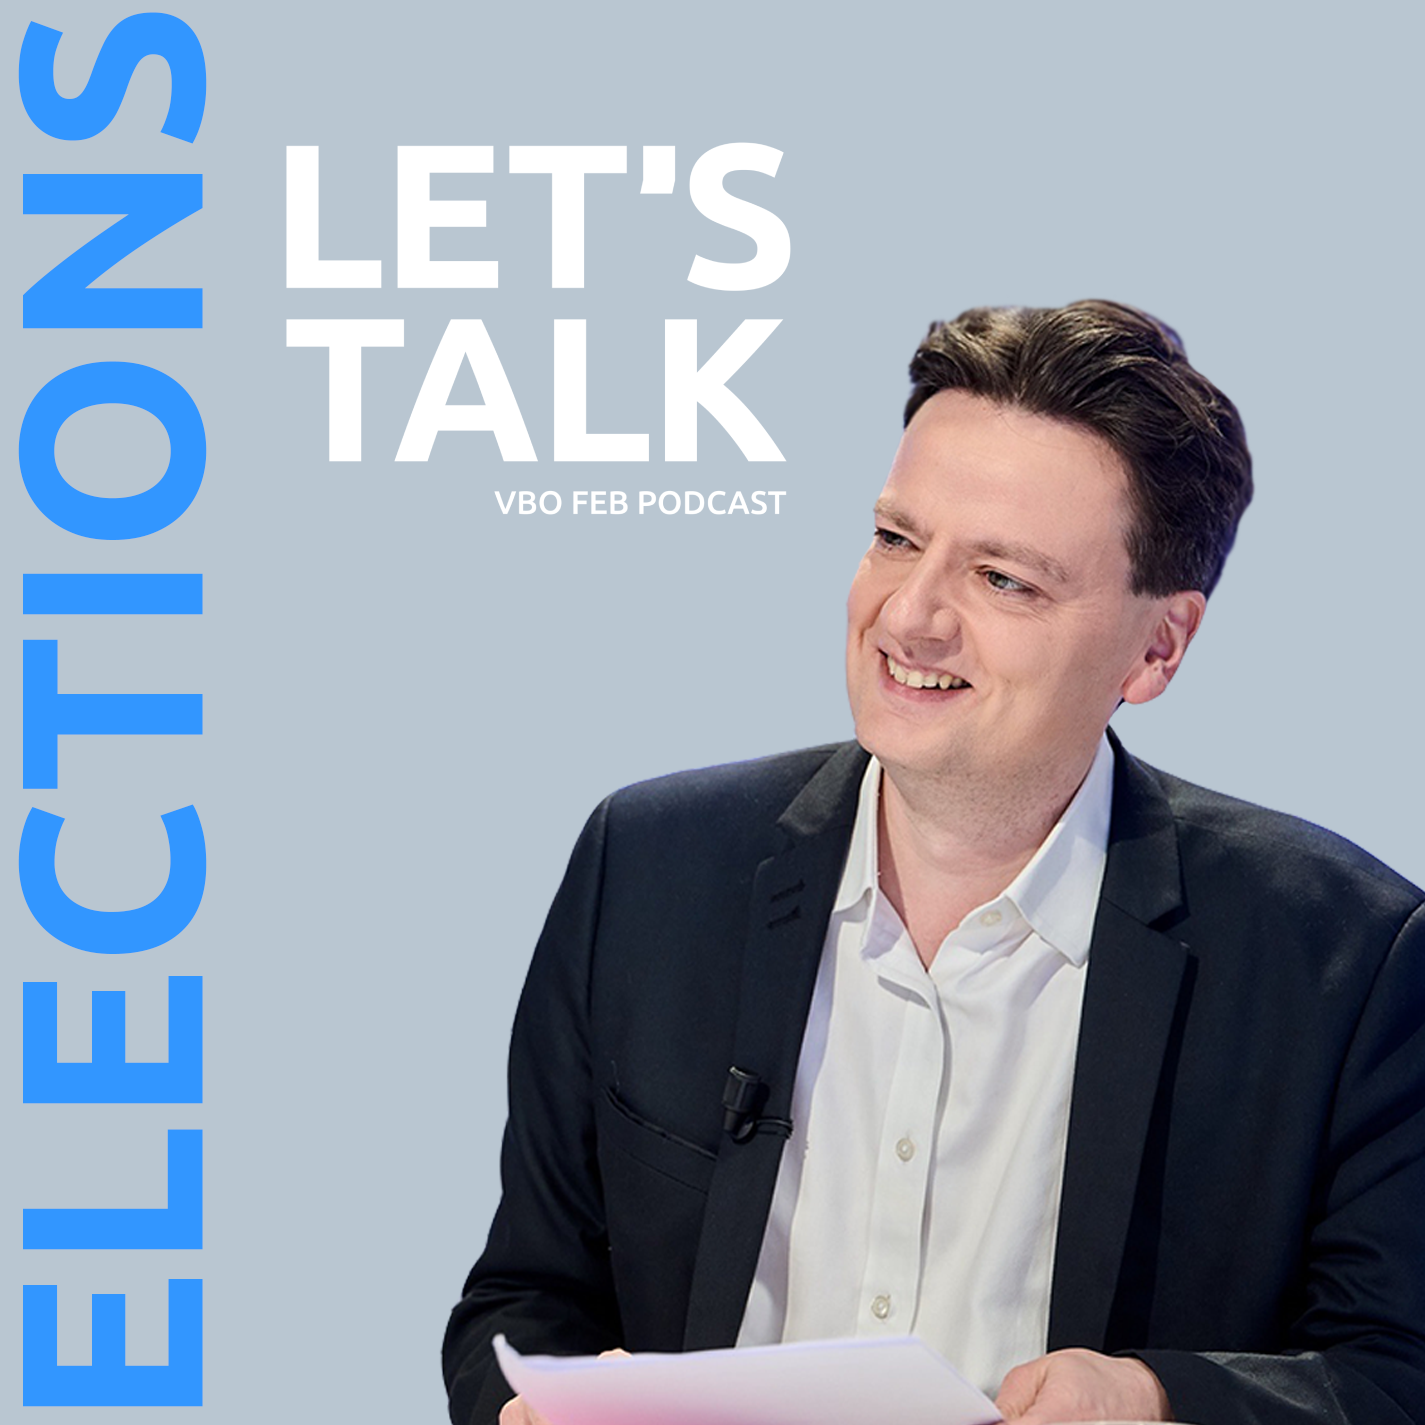 Let's Talk Elections avec François De Smet (DéFI)